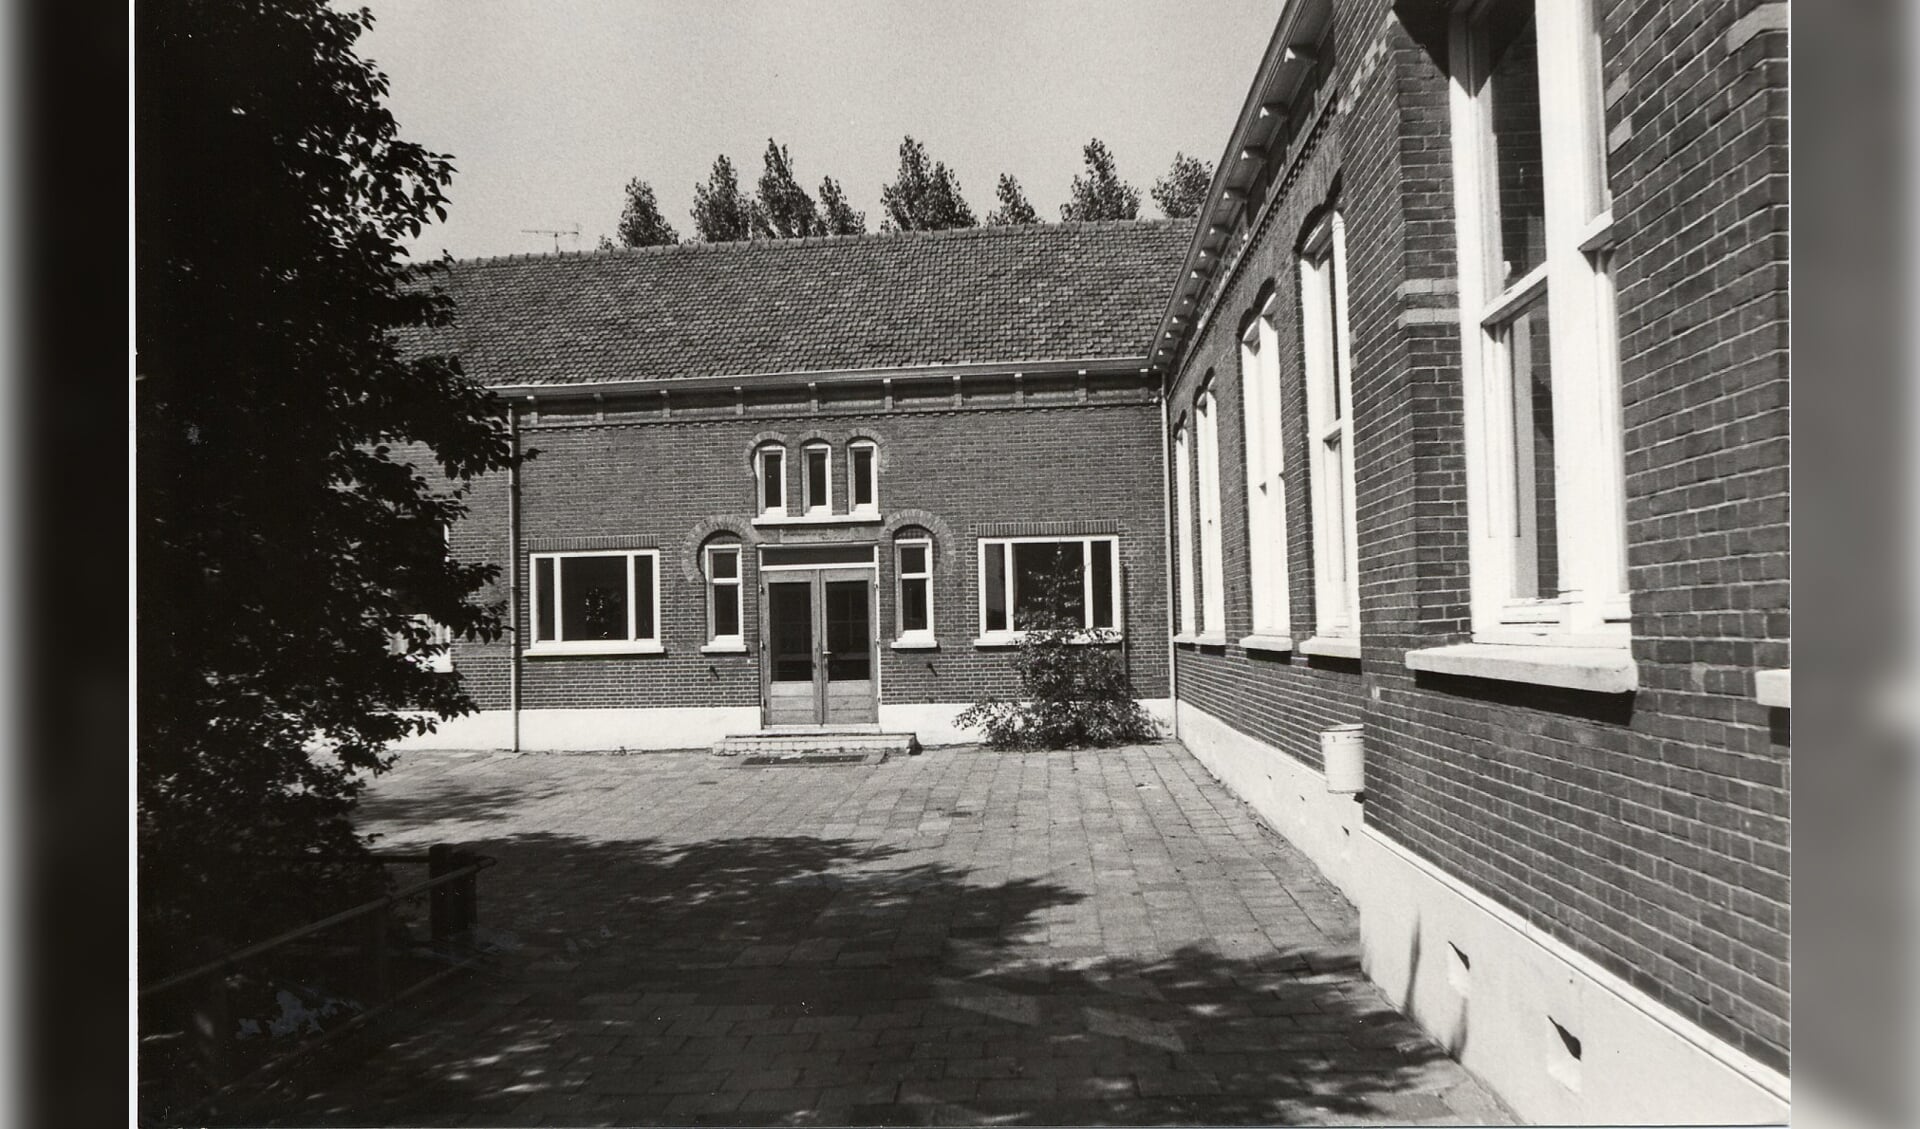 De voormalige Kerkwegschool